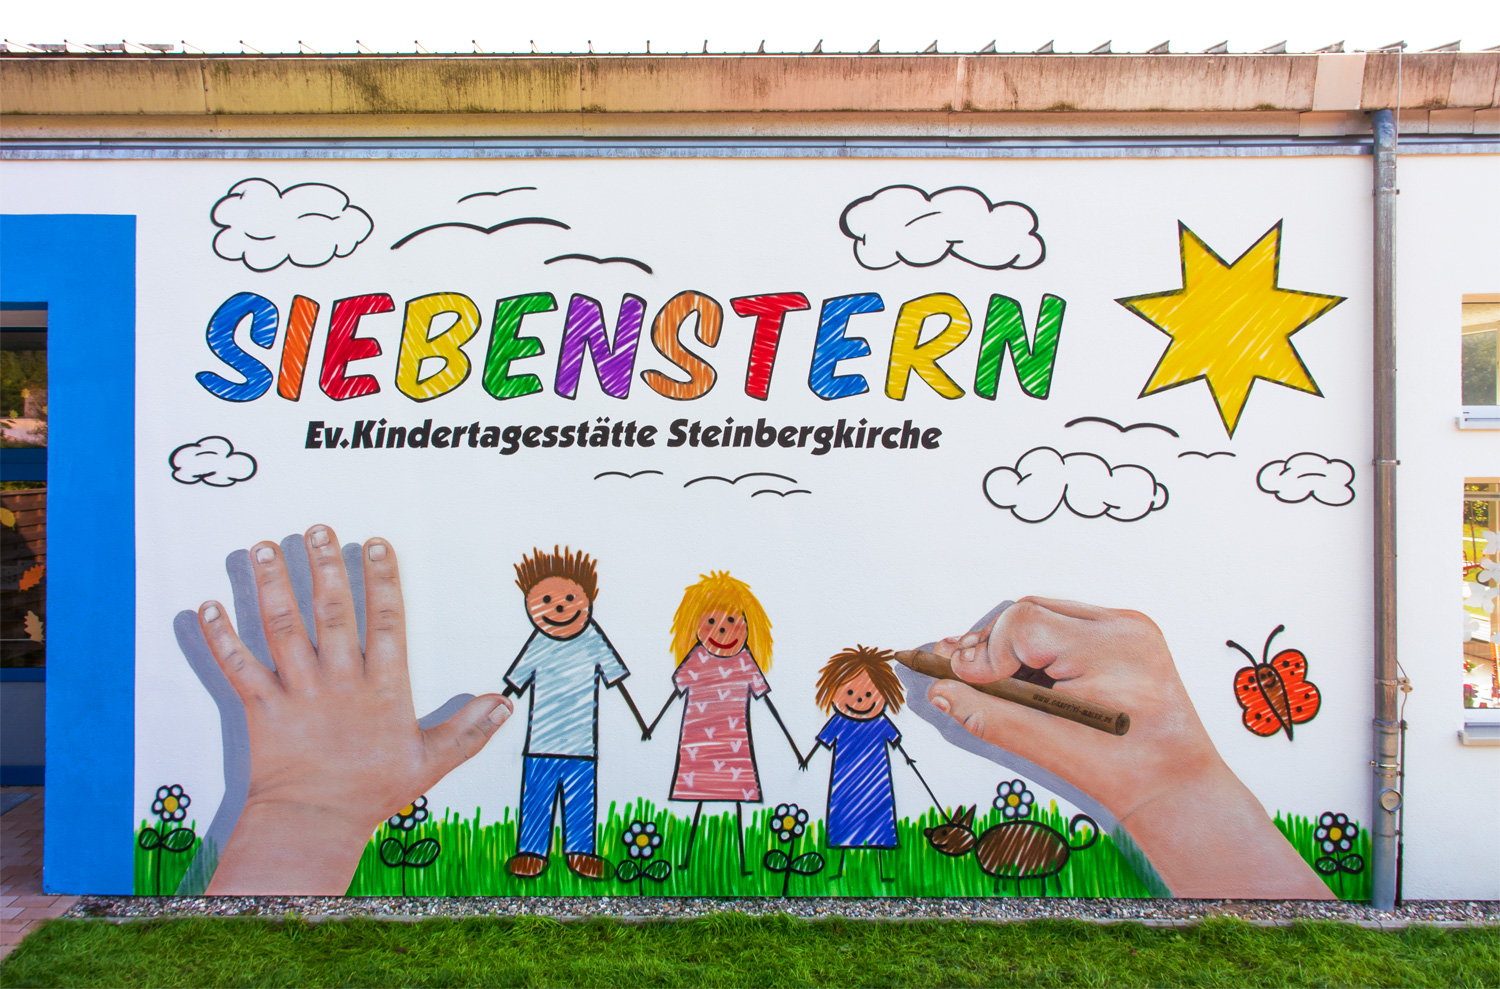 Fassadengestaltung für Kita Siebenstern - Graffiti in Steinbergkirche